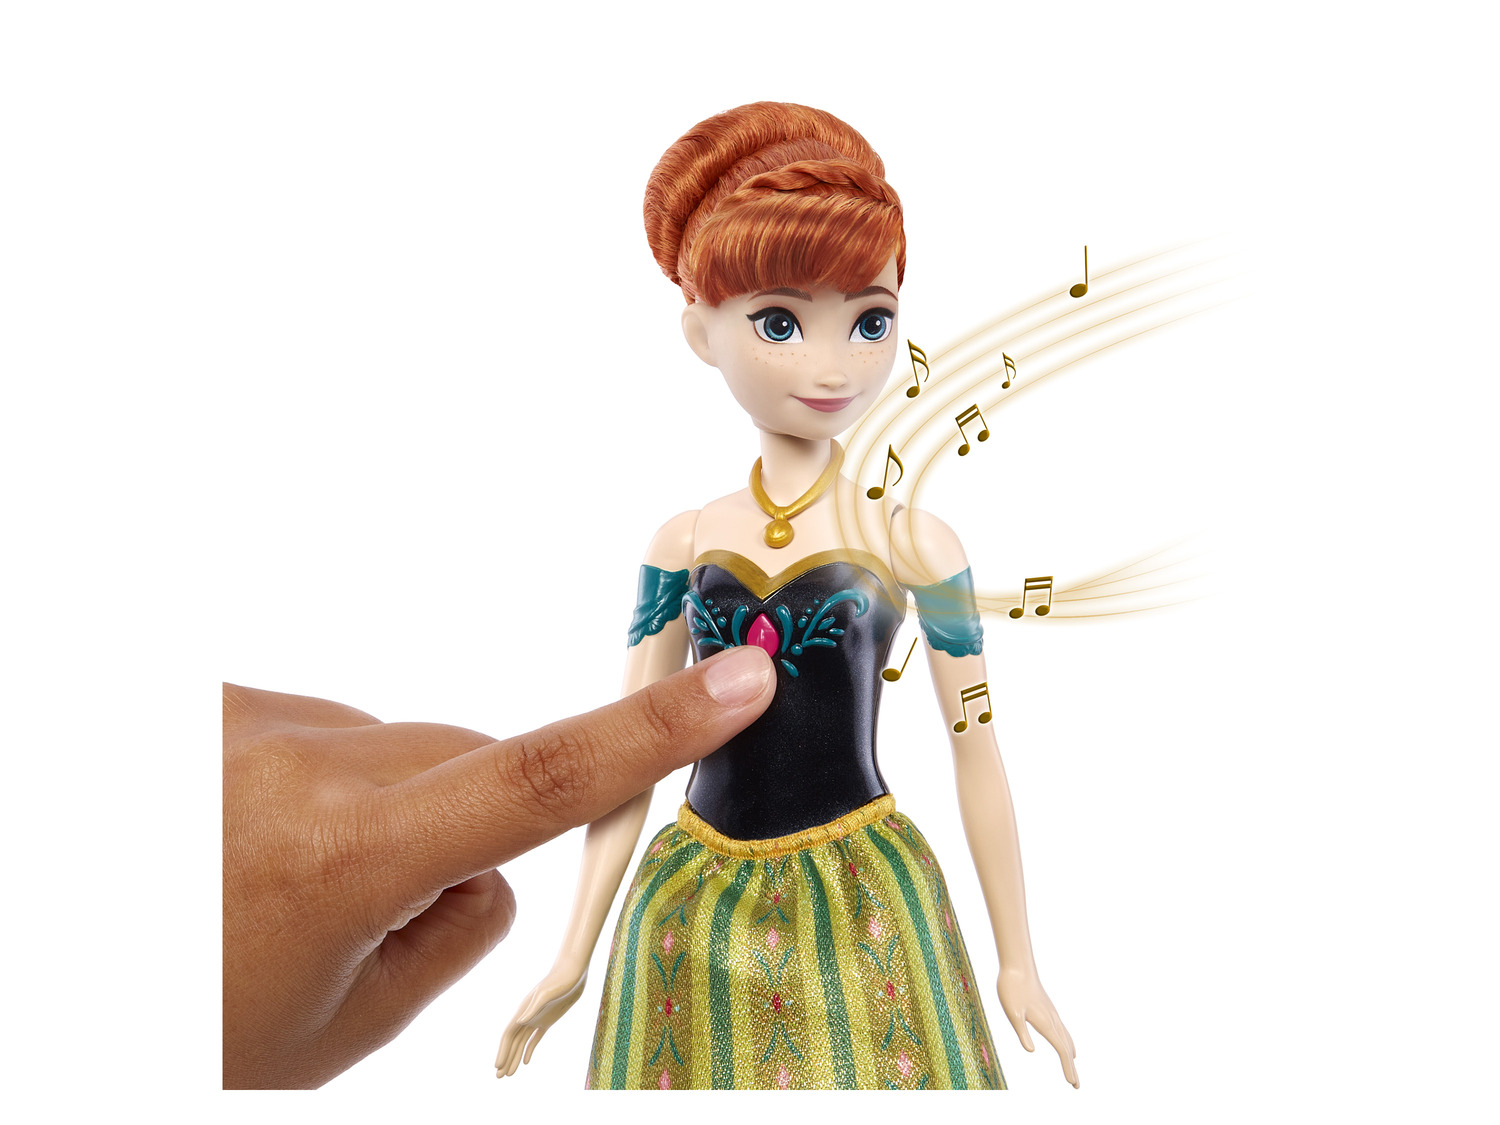 JOUET] La Reine des Neiges Disney Elsa Poupée chantante Disney